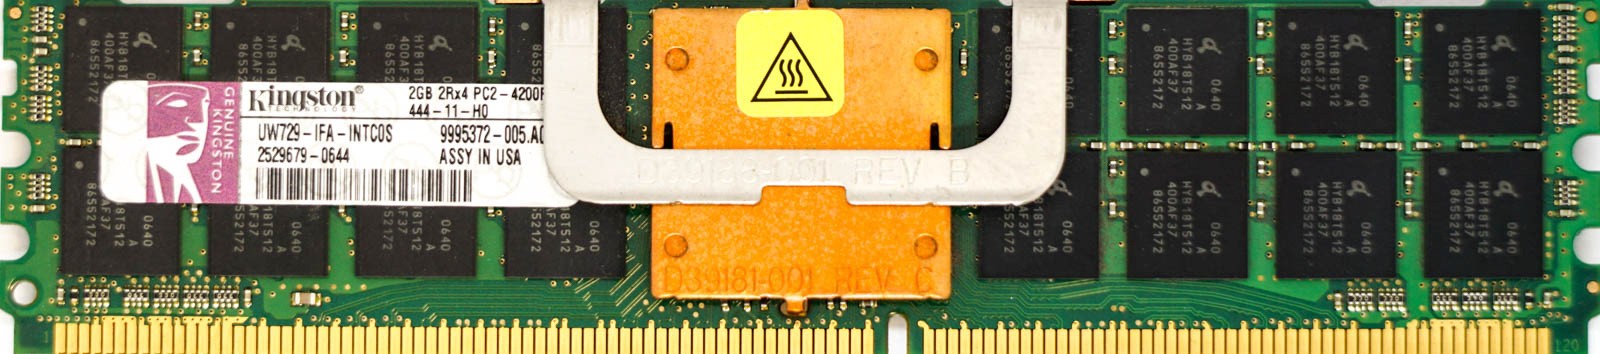 Kingston - 2GB PC2-4200F (DDR2-533Mhz, 2RX4)